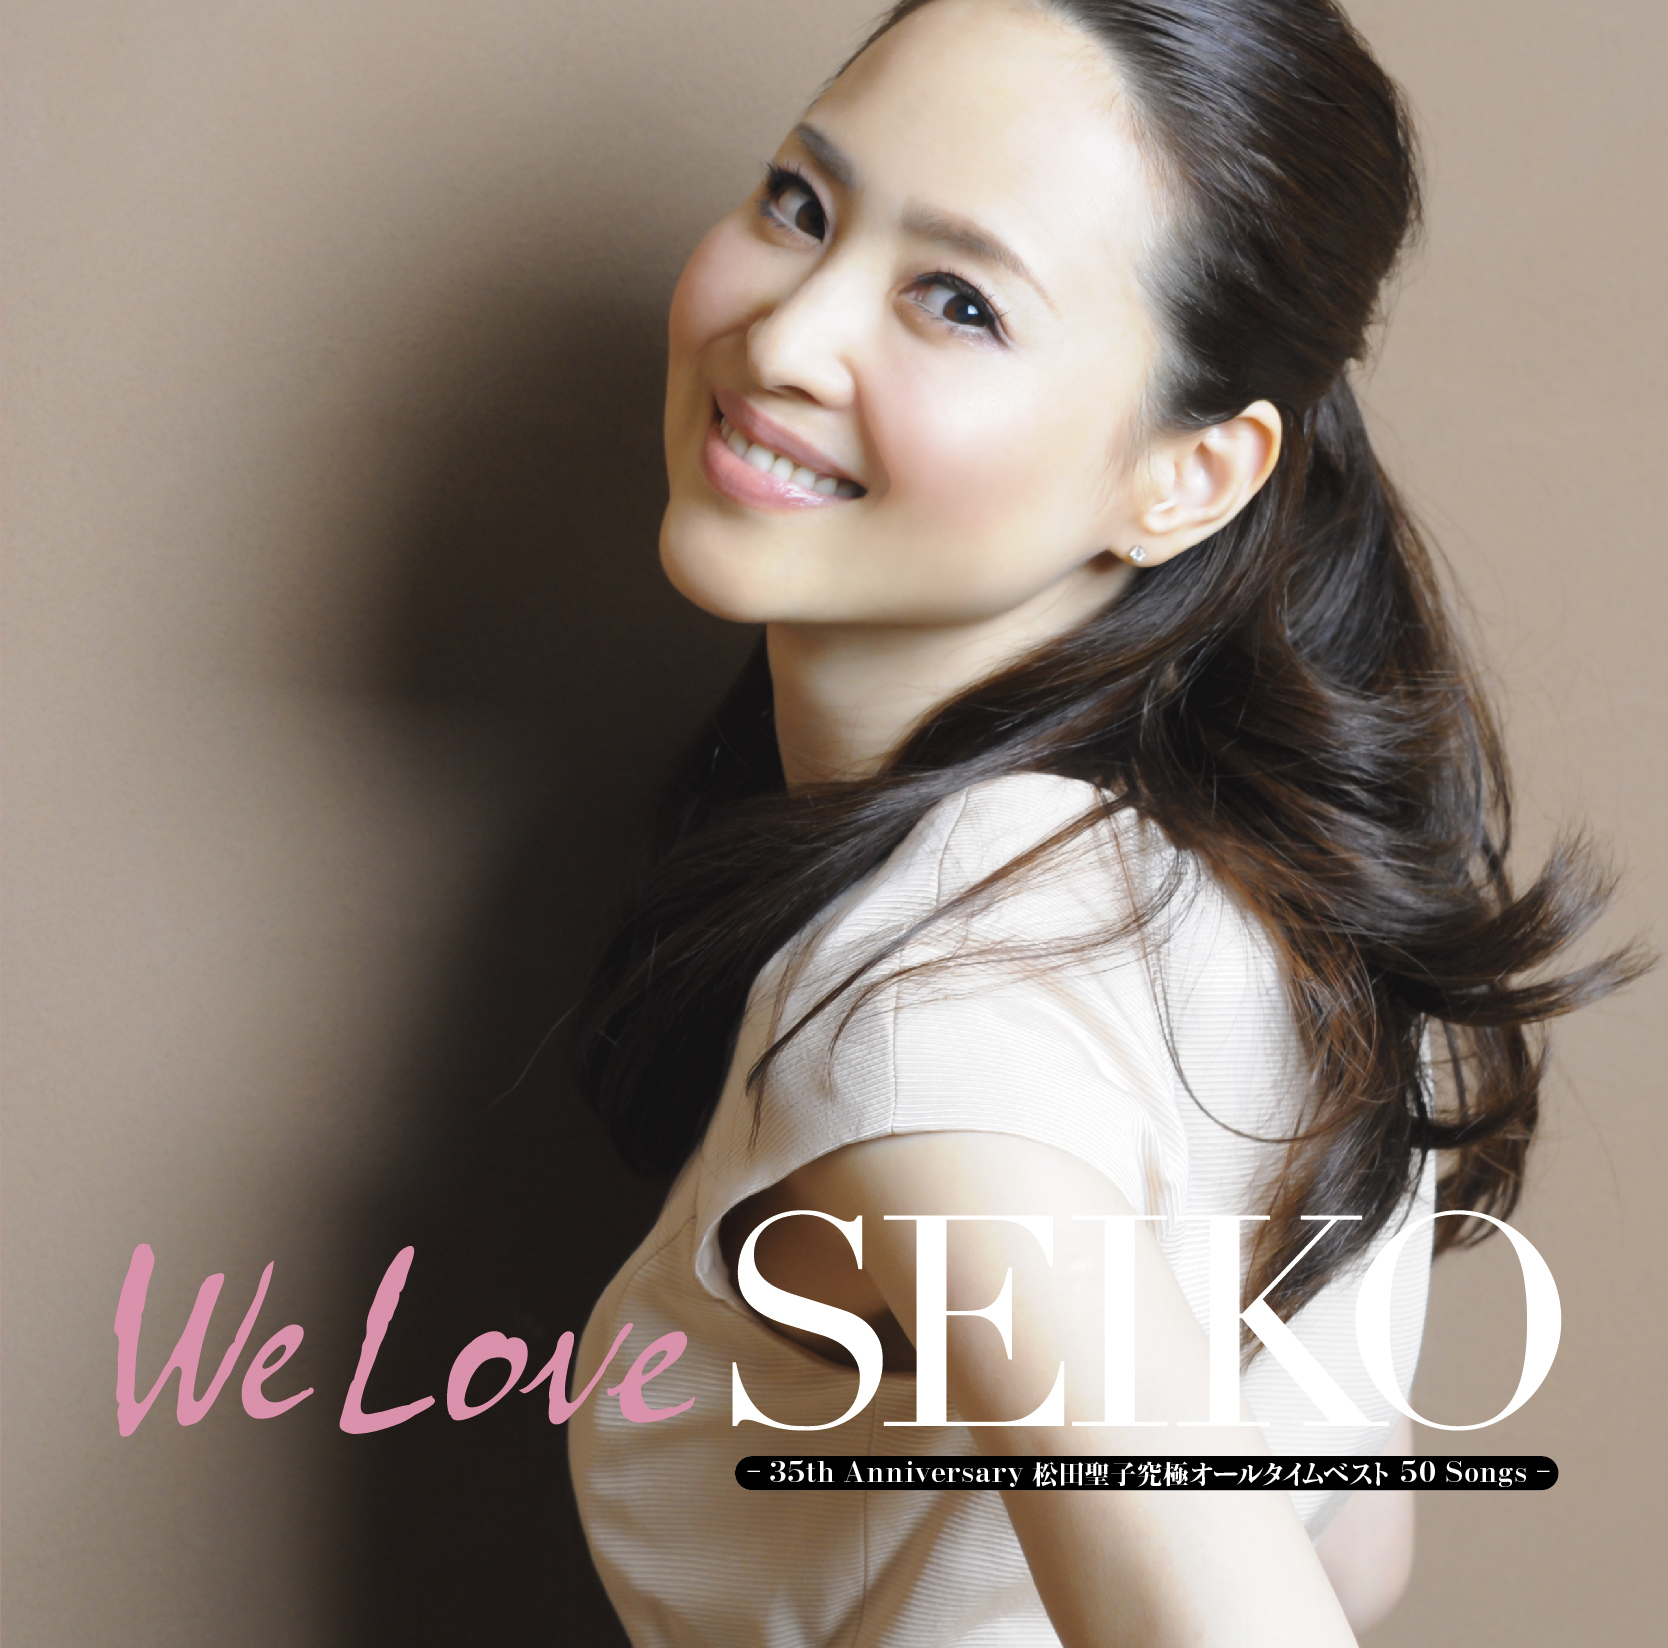 アルバム『「We Love SEIKO」 -35th Anniversary 松田聖子究極オールタイムベスト 50 Songs-』 